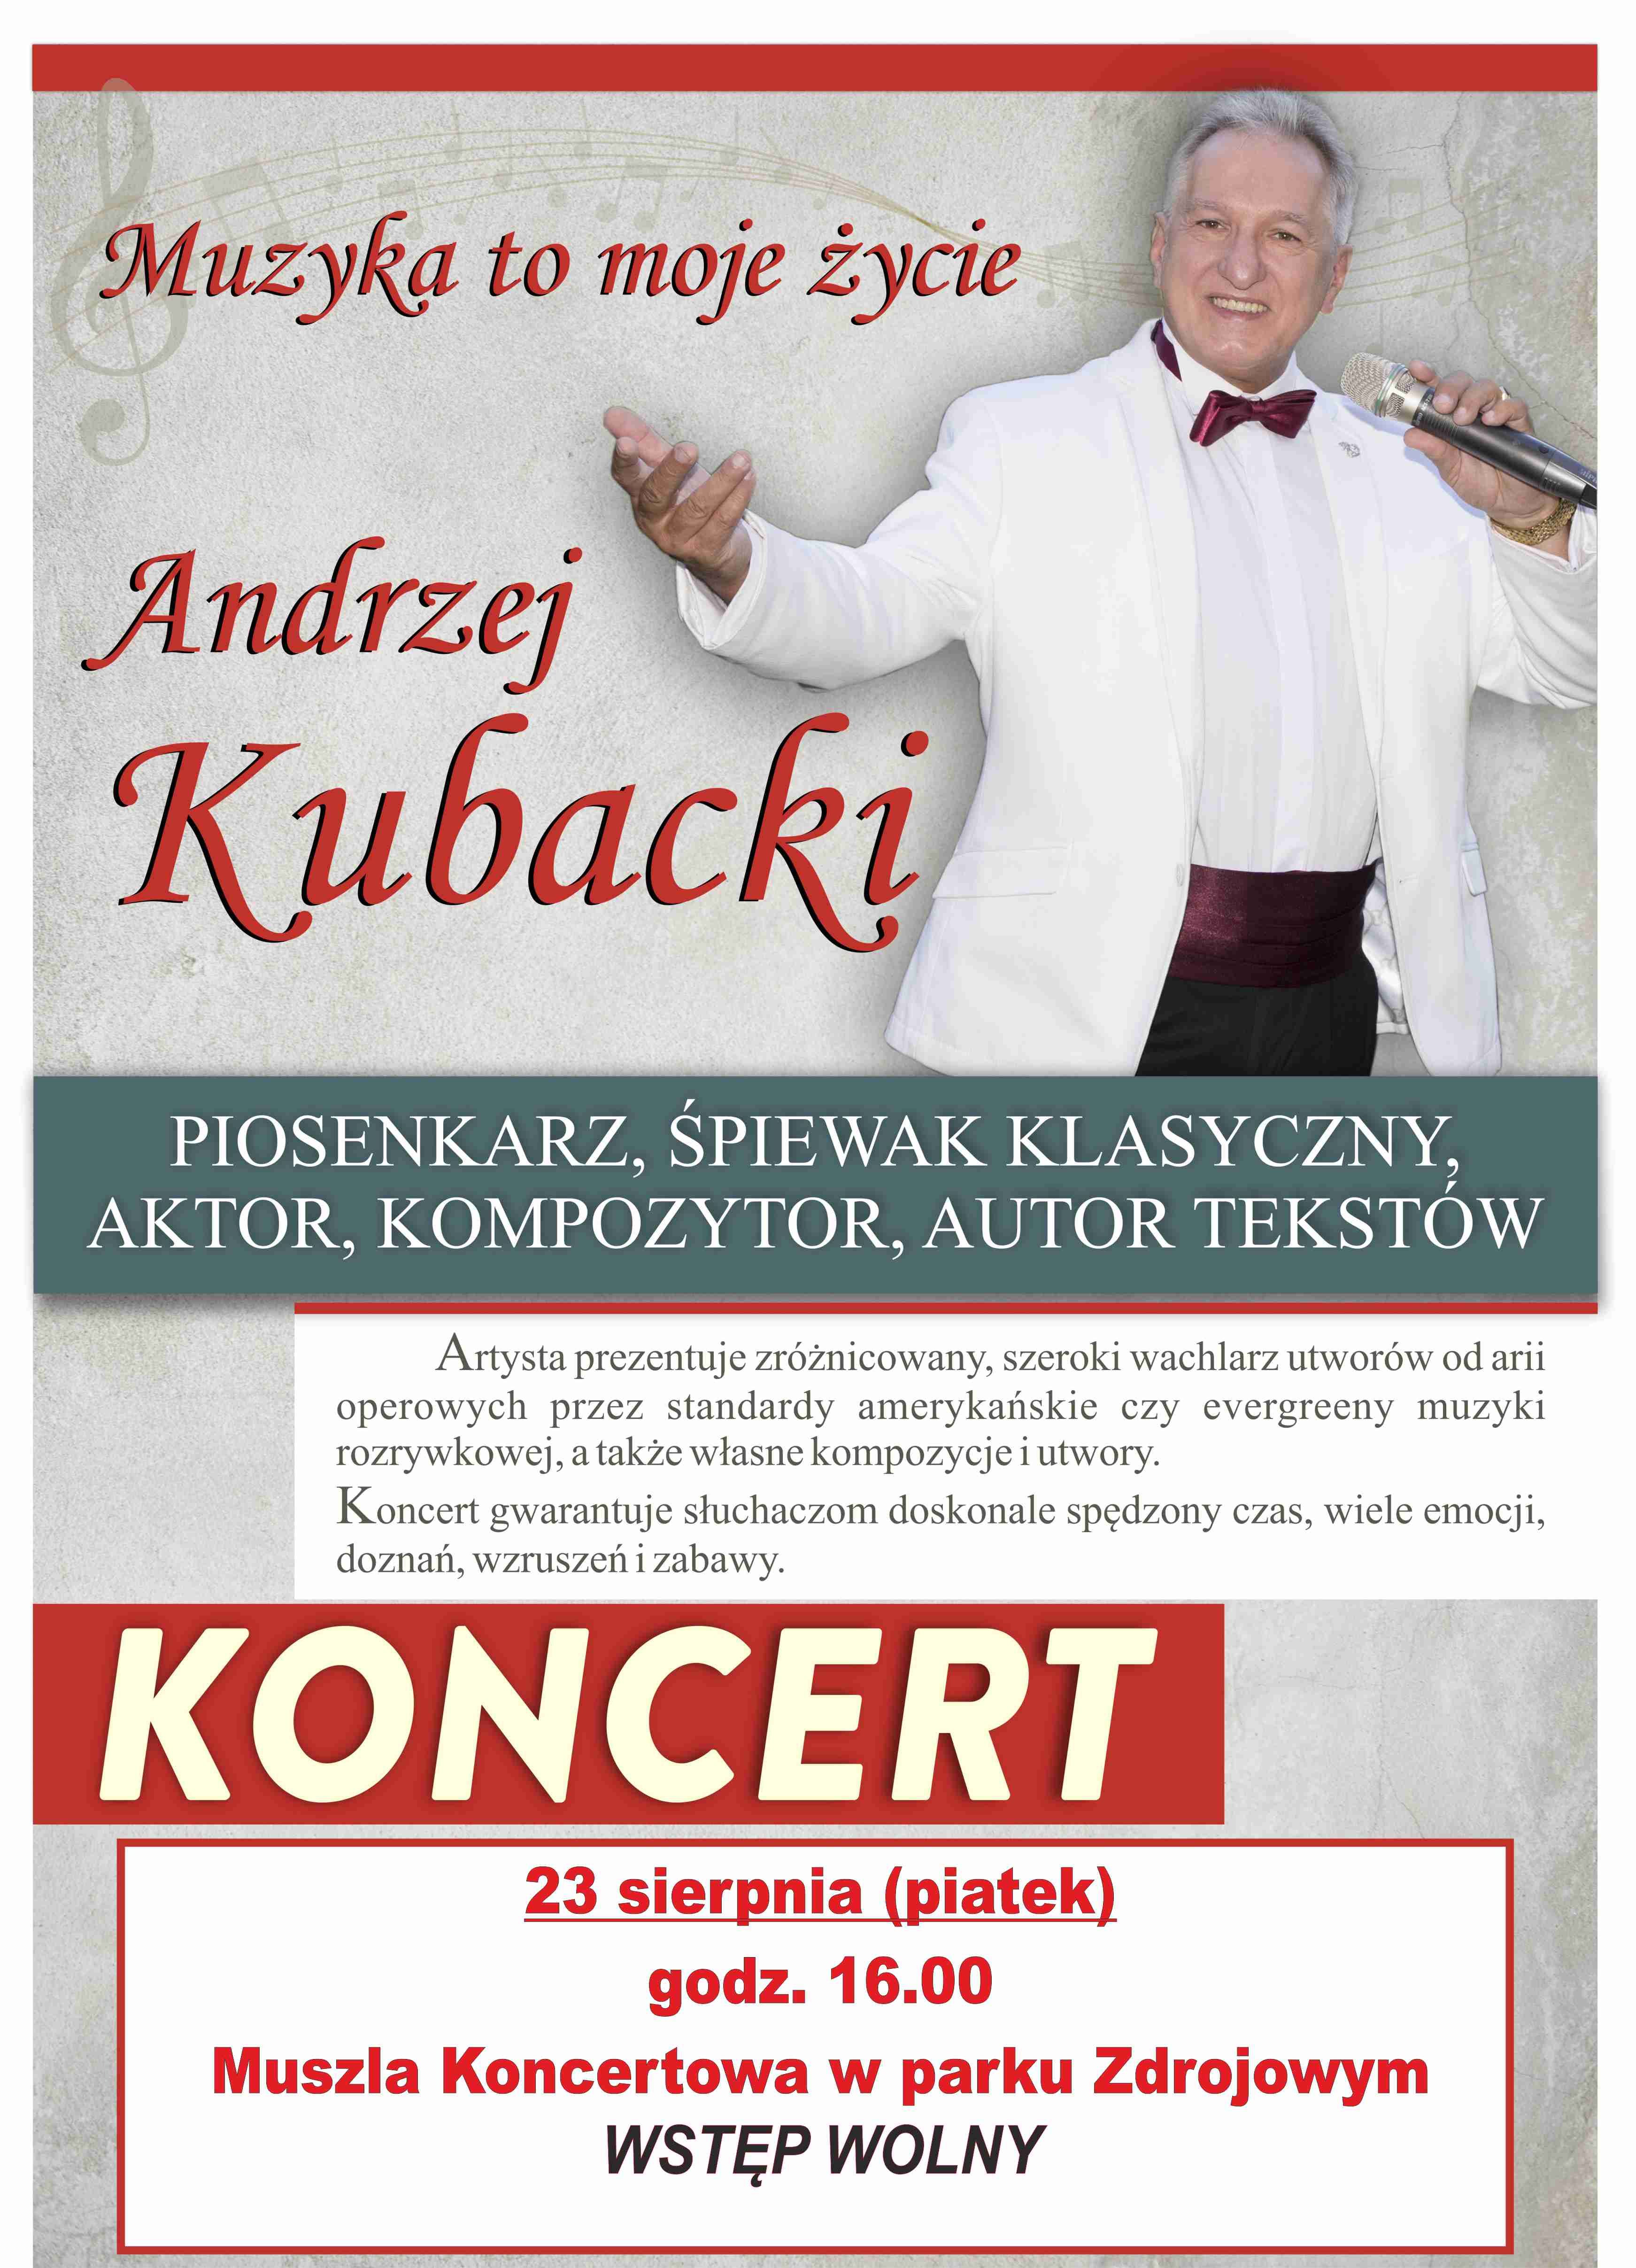 Koncert Andrzeja Kubackiego